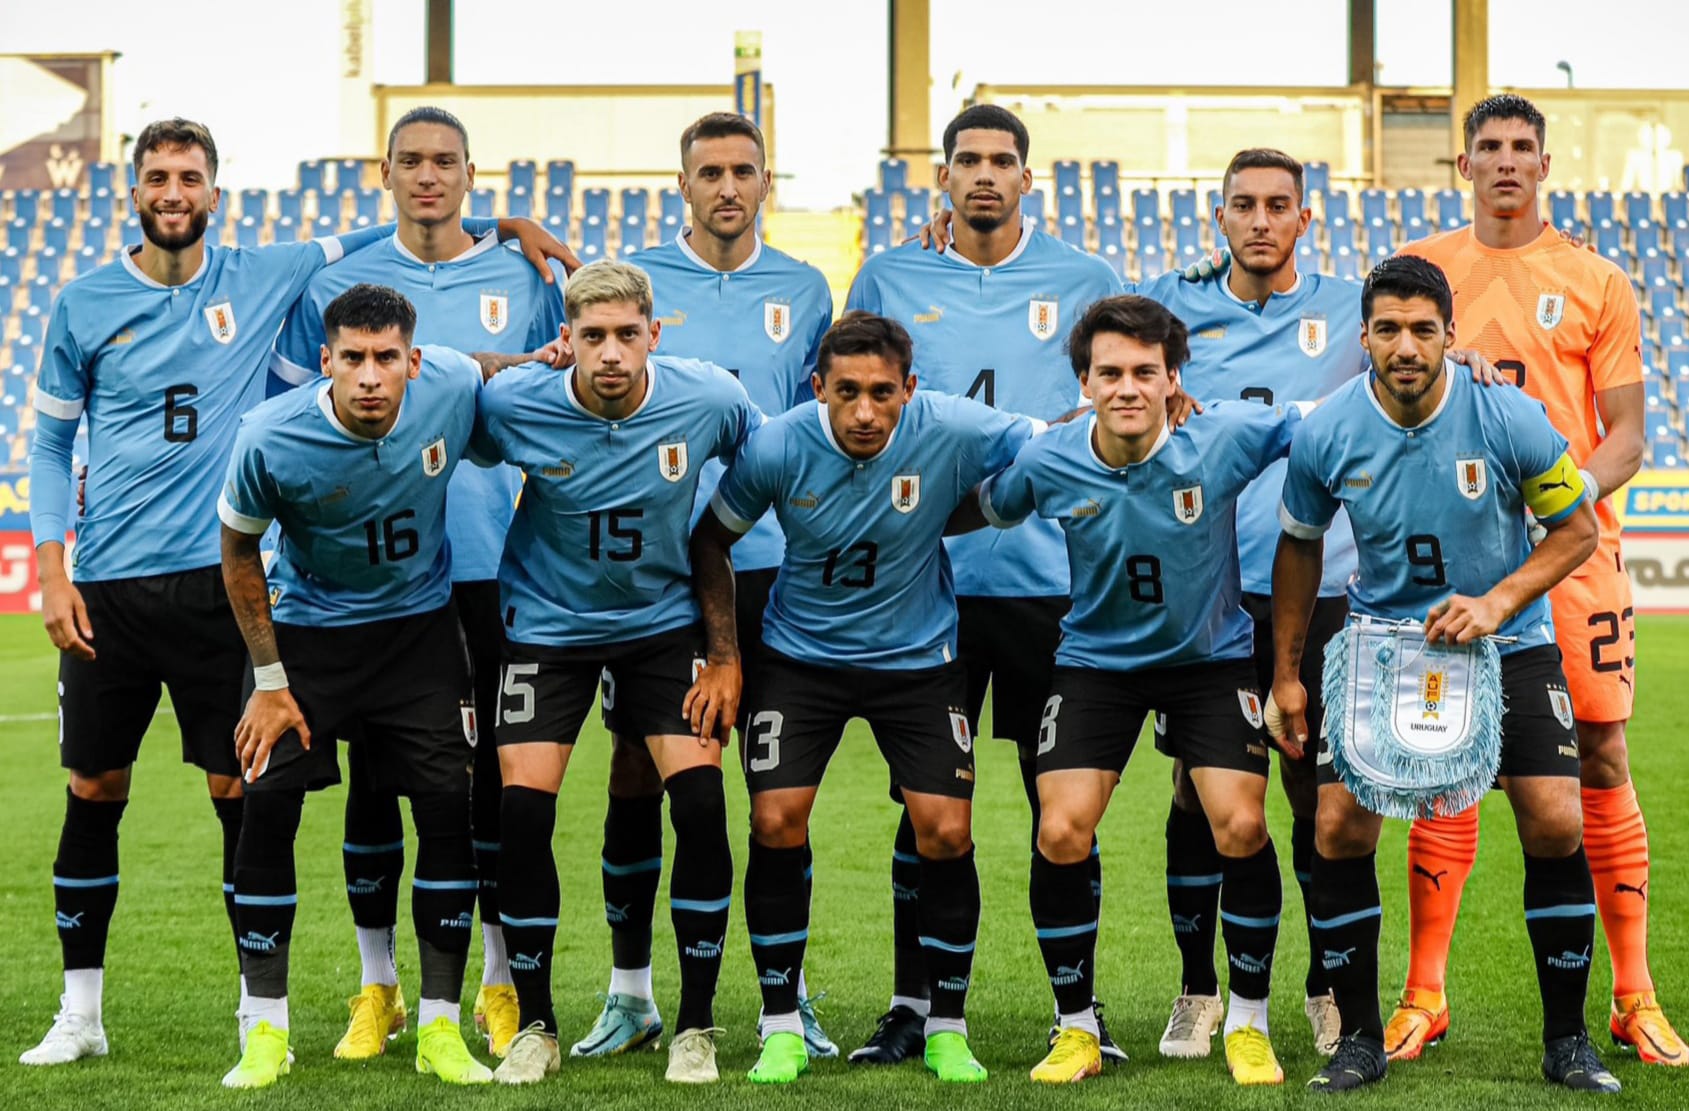 La selección de fútbol de Uruguay finalmente no disputará